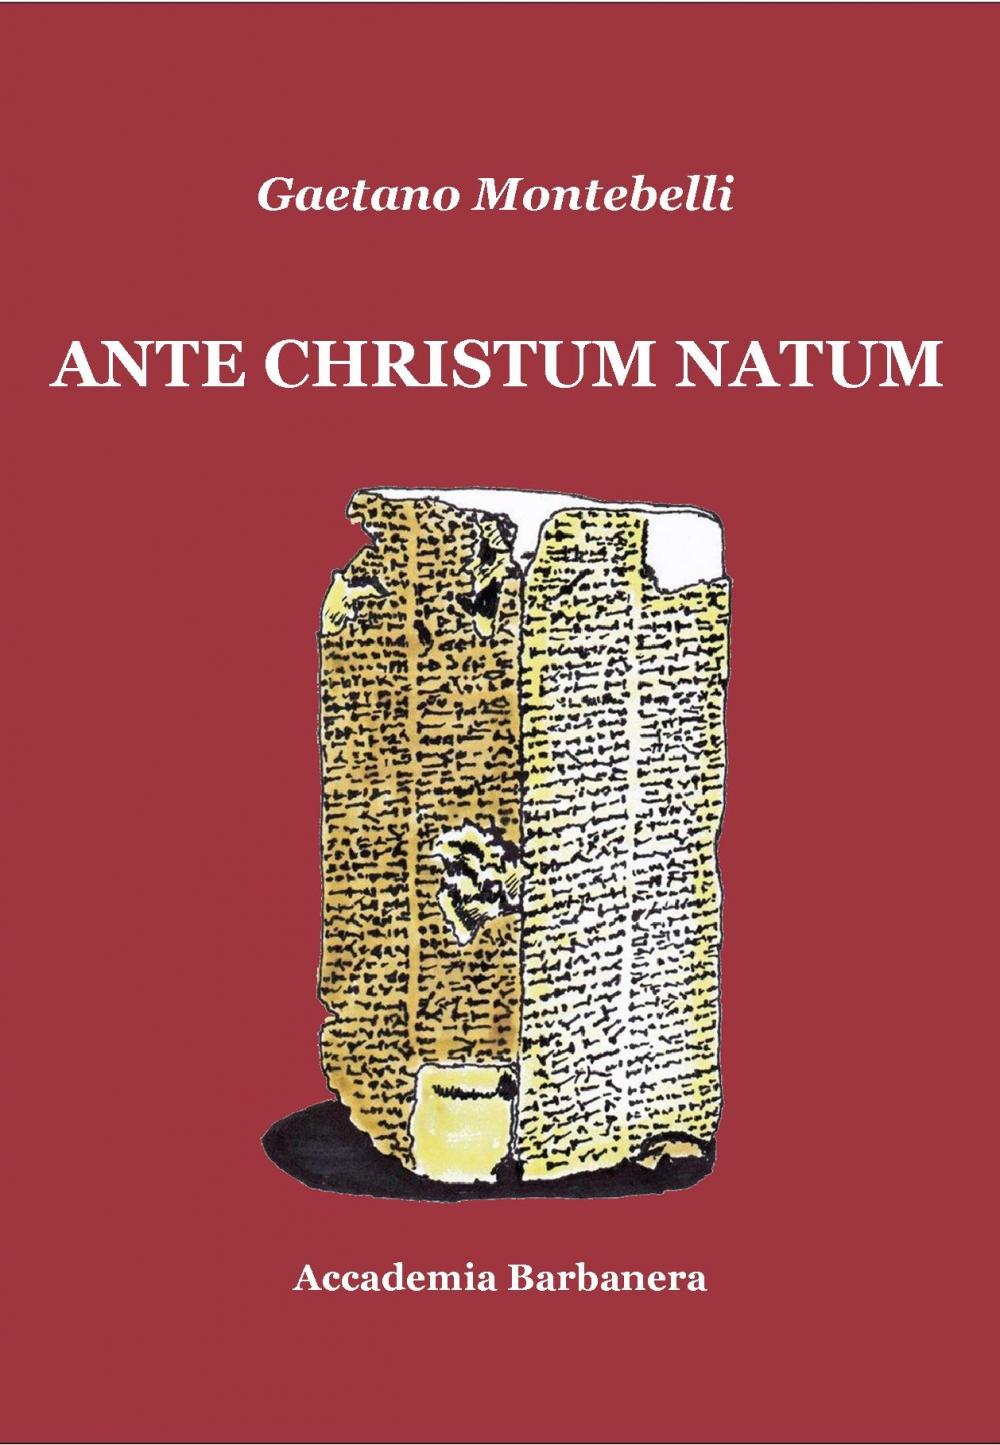 ANTE CHRISTUM NATUM